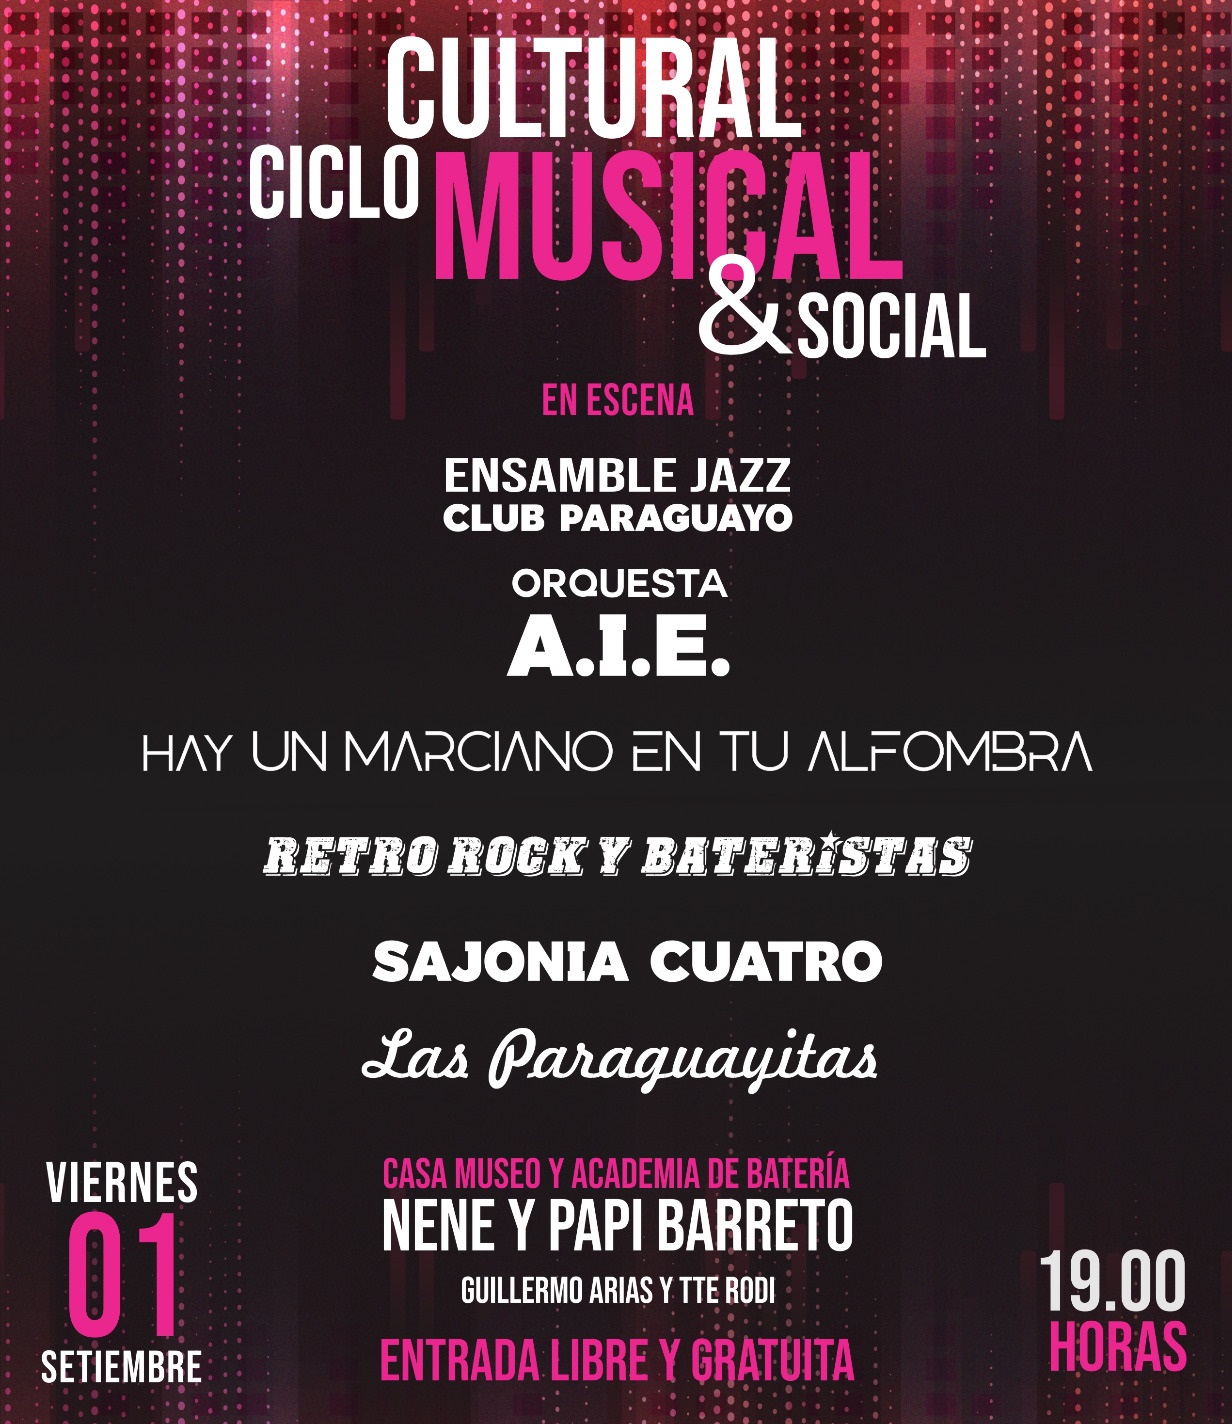 Fondos de Cultura: hoy llega la segunda edición del “Circuito del Jazz Club Paraguayo” imagen